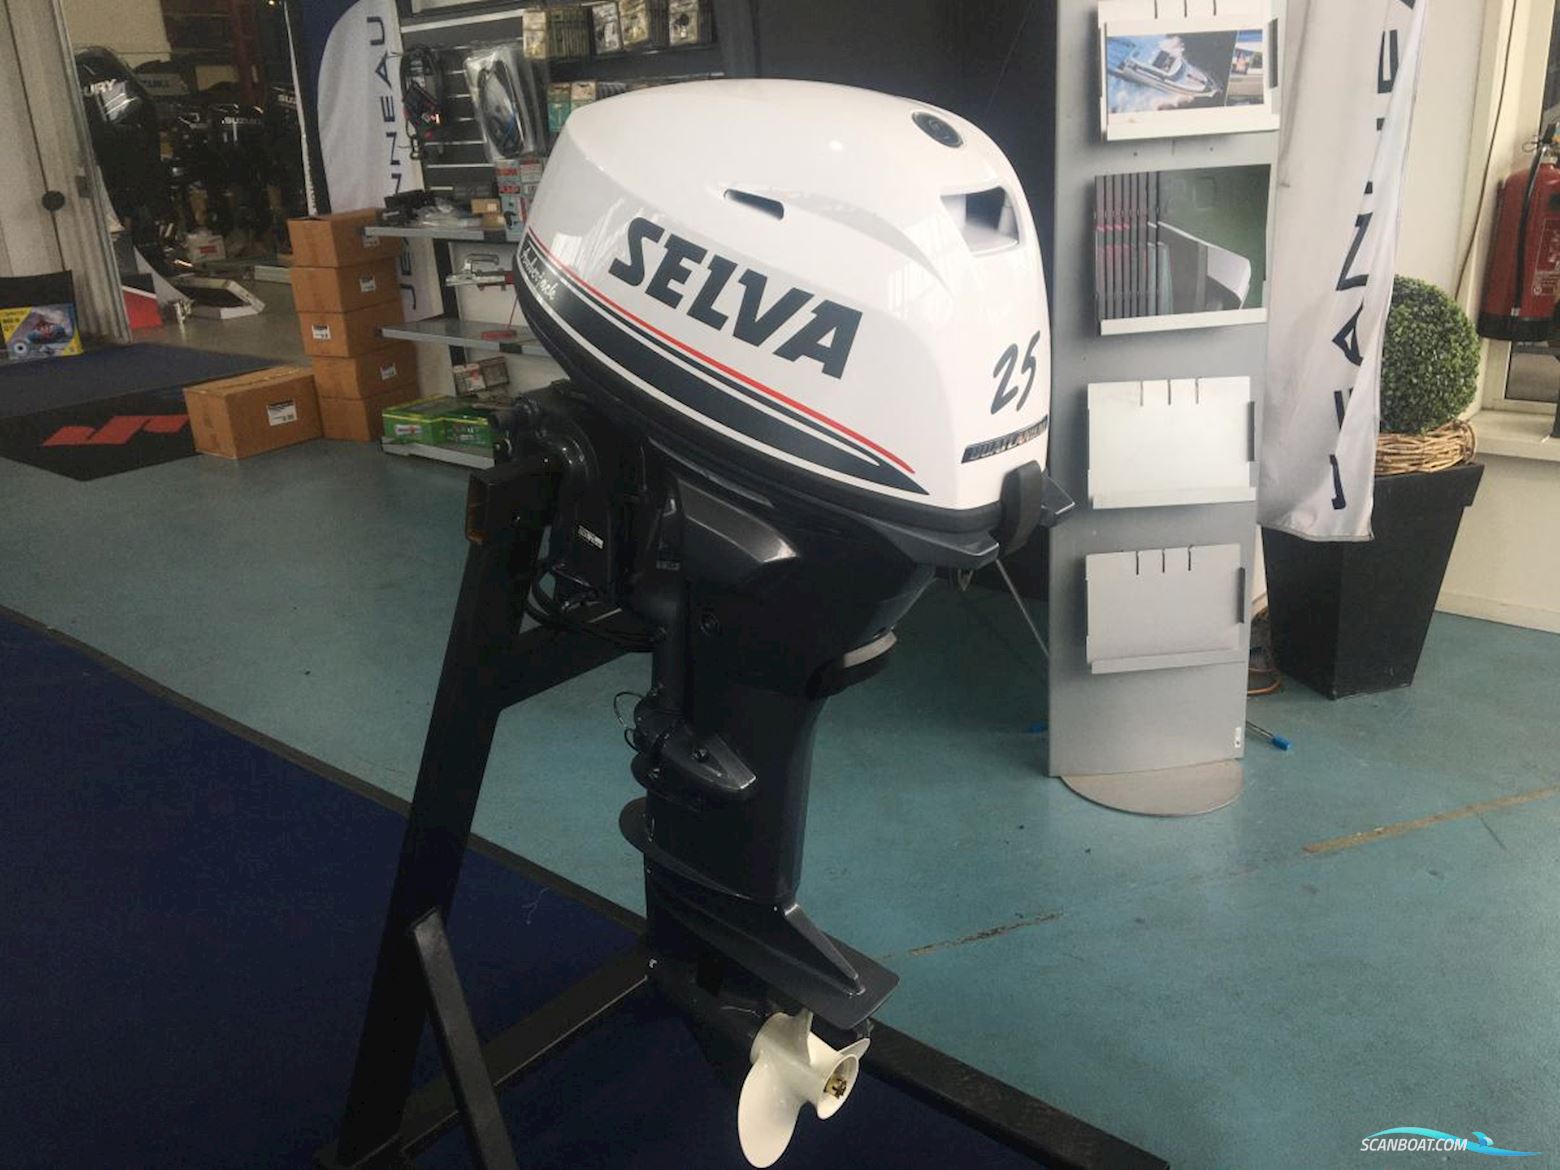 Selva 25 pk langstaart Motoren 2021, The Netherlands